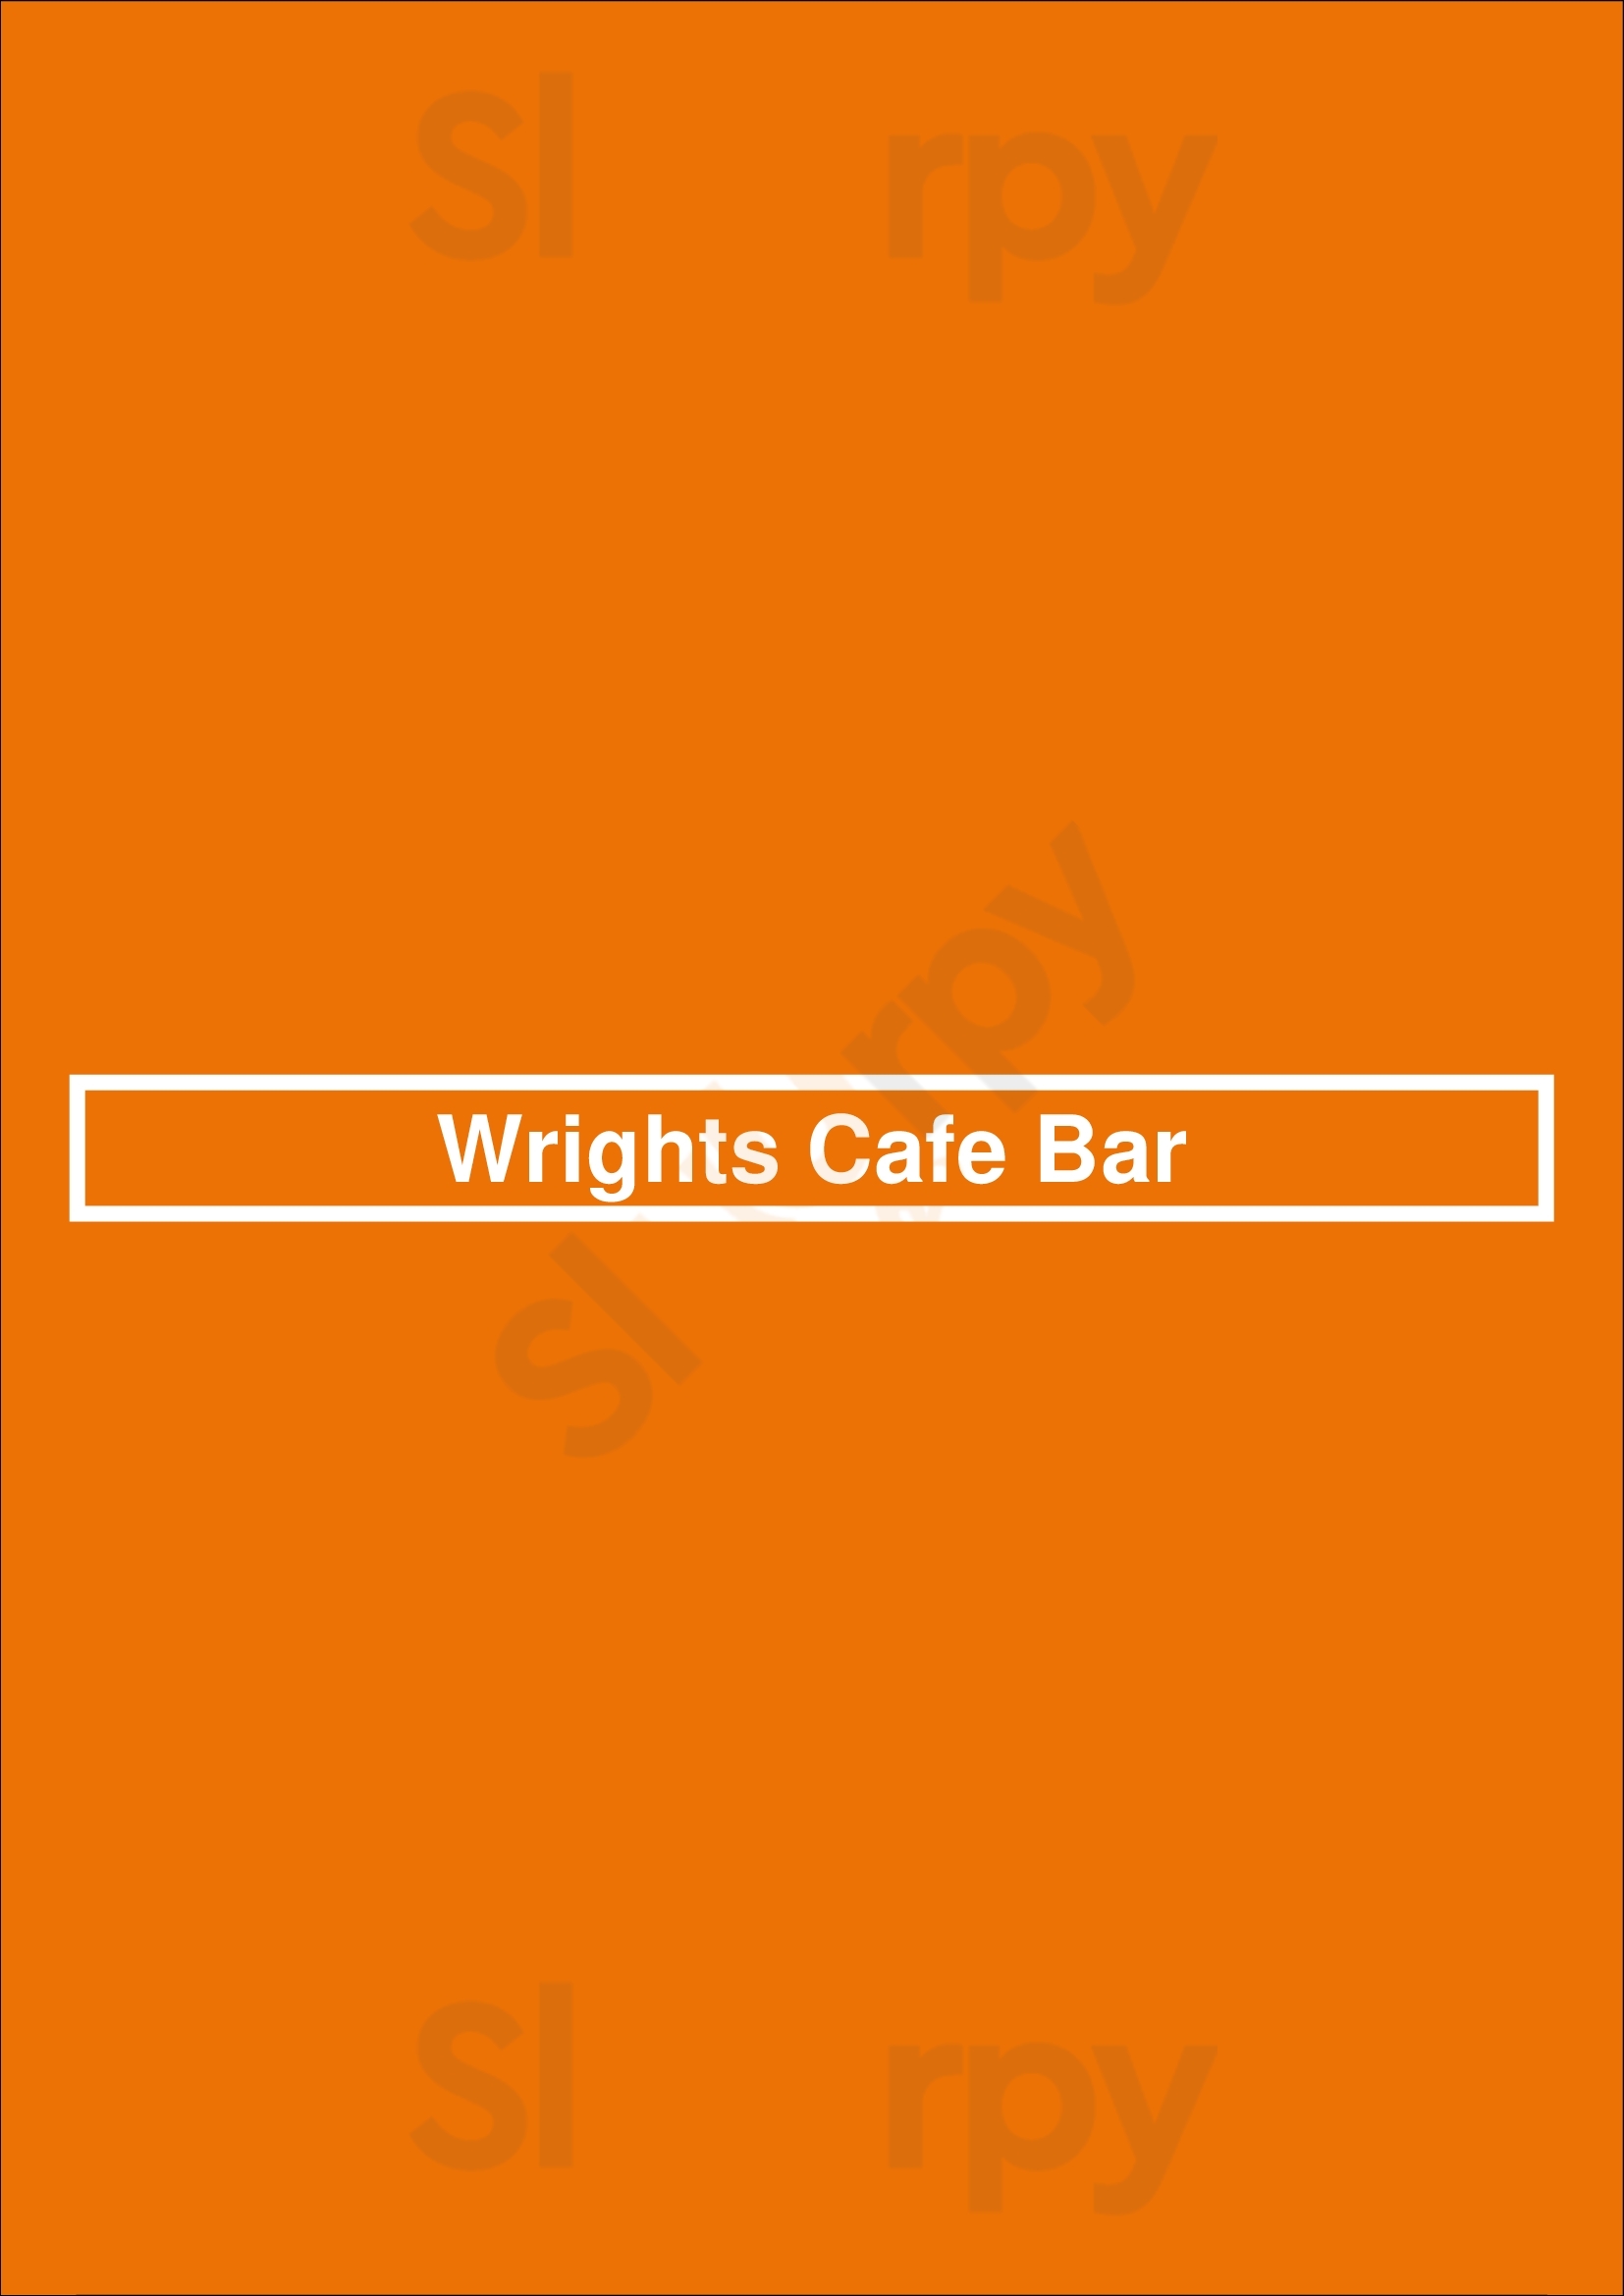 Wrights Cafe Bar Swords Menu - 1